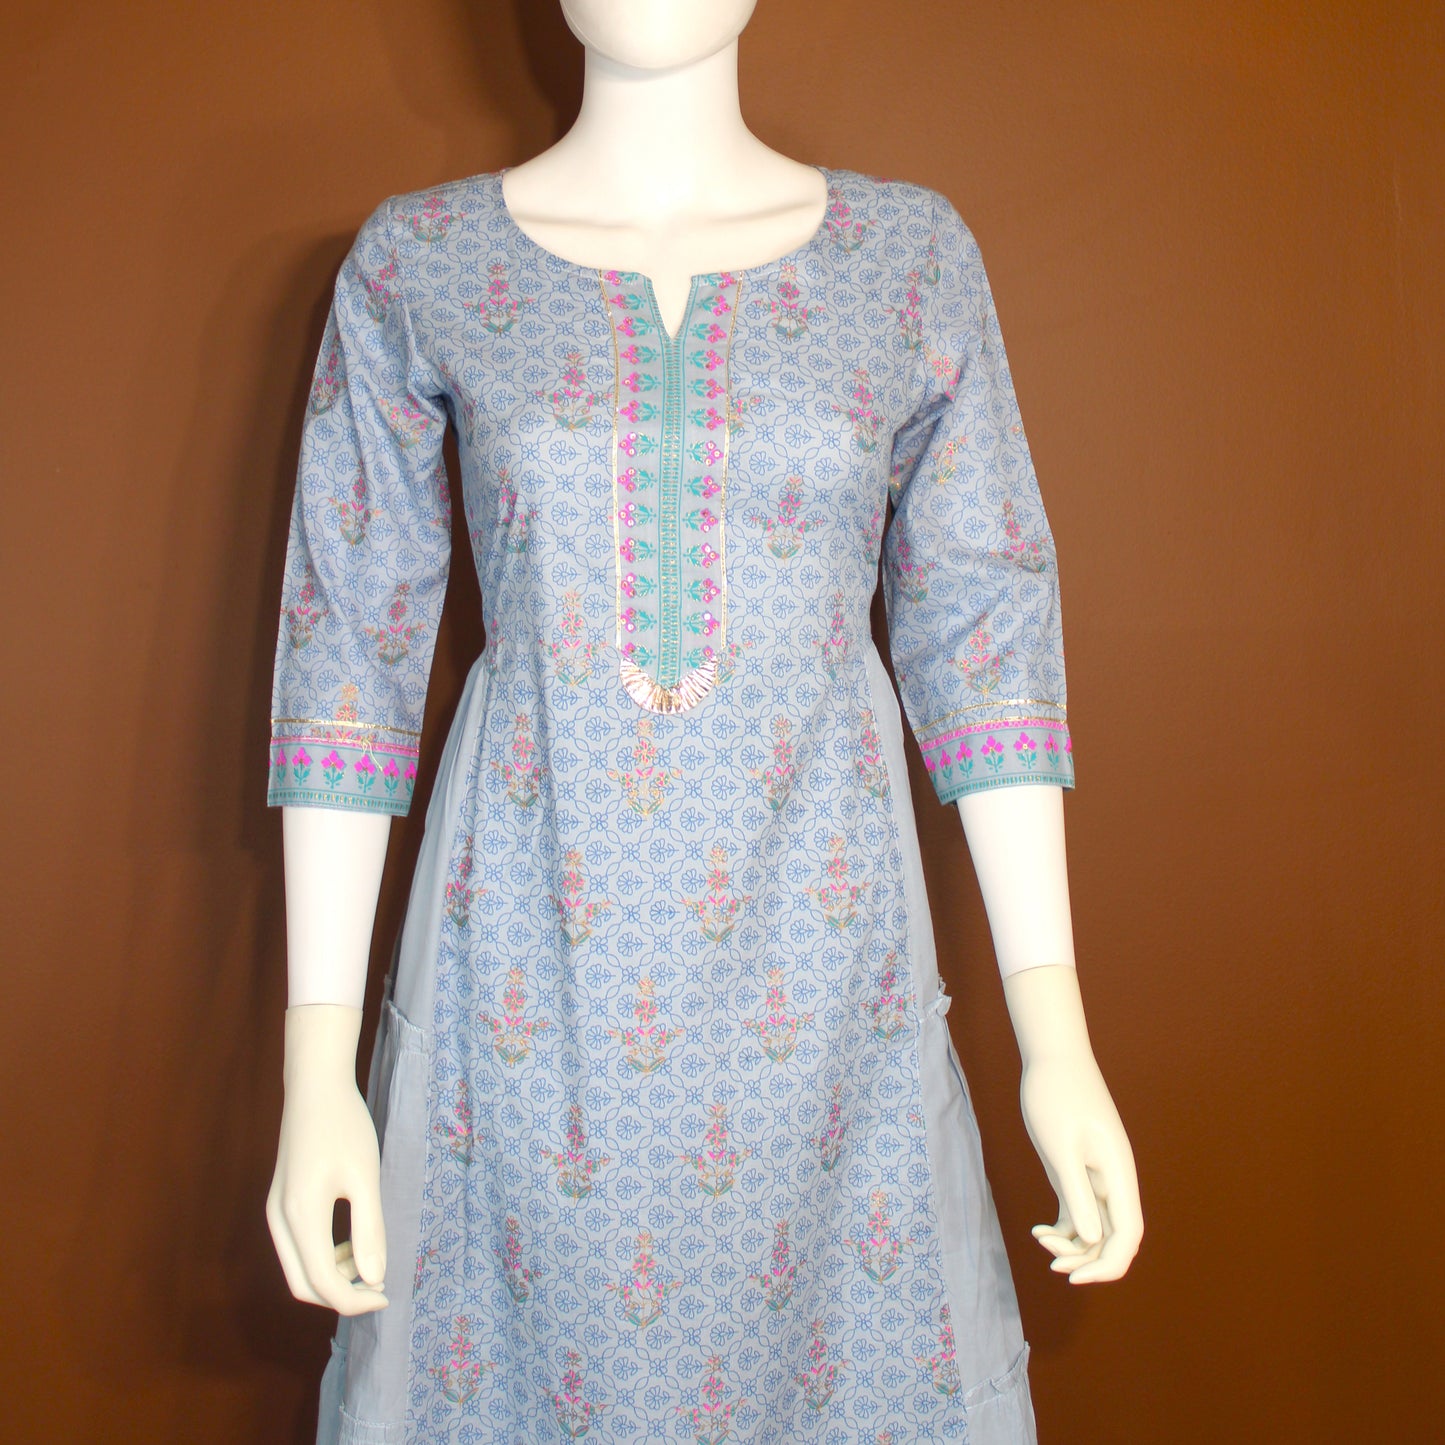 Maharani's Soft Cotton Long Dress - Light Blue (M)